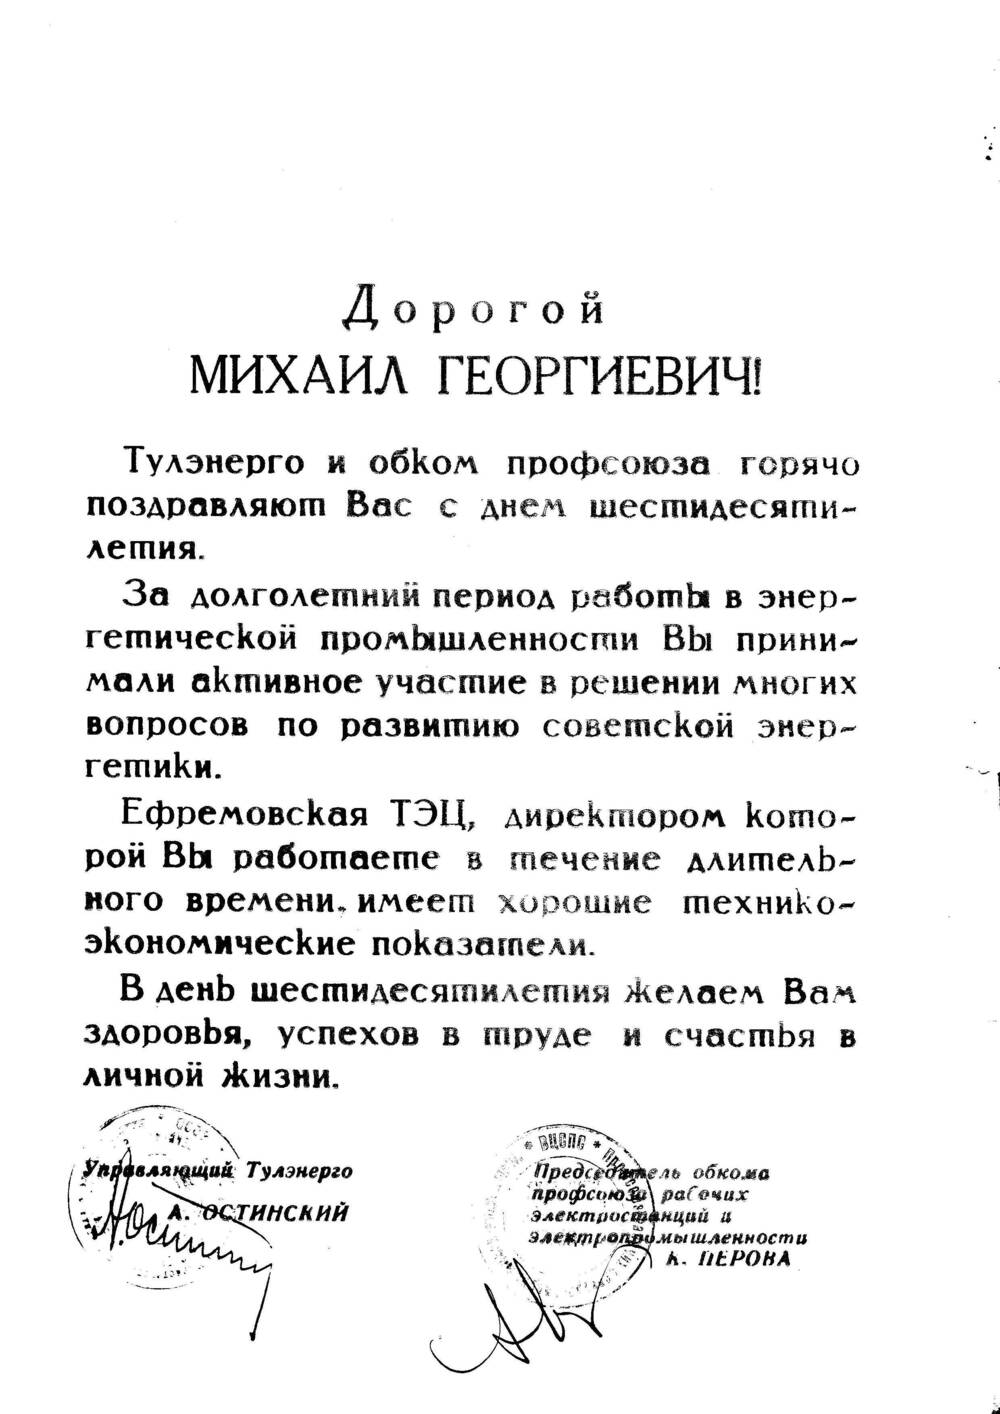 Поздравительный адрес Юшманову М.Г.в честь 60-летия со дня рождения «Тулэнерго» и обкома профсоюза.